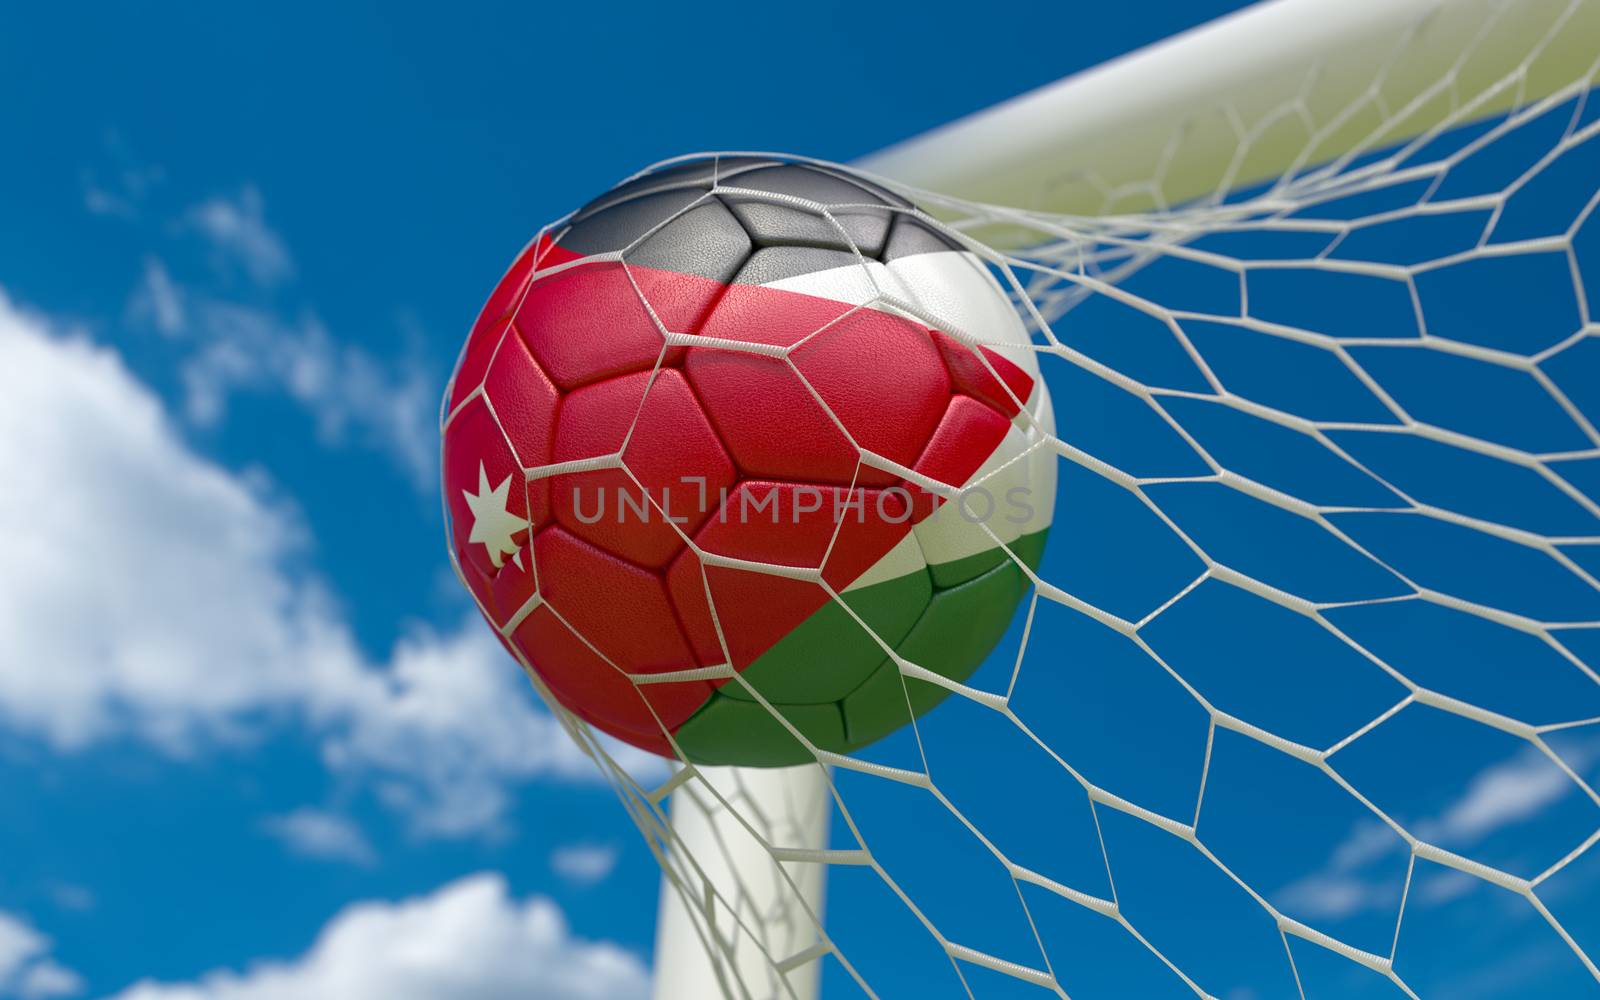 Jordan flag and soccer ball, football in goal net